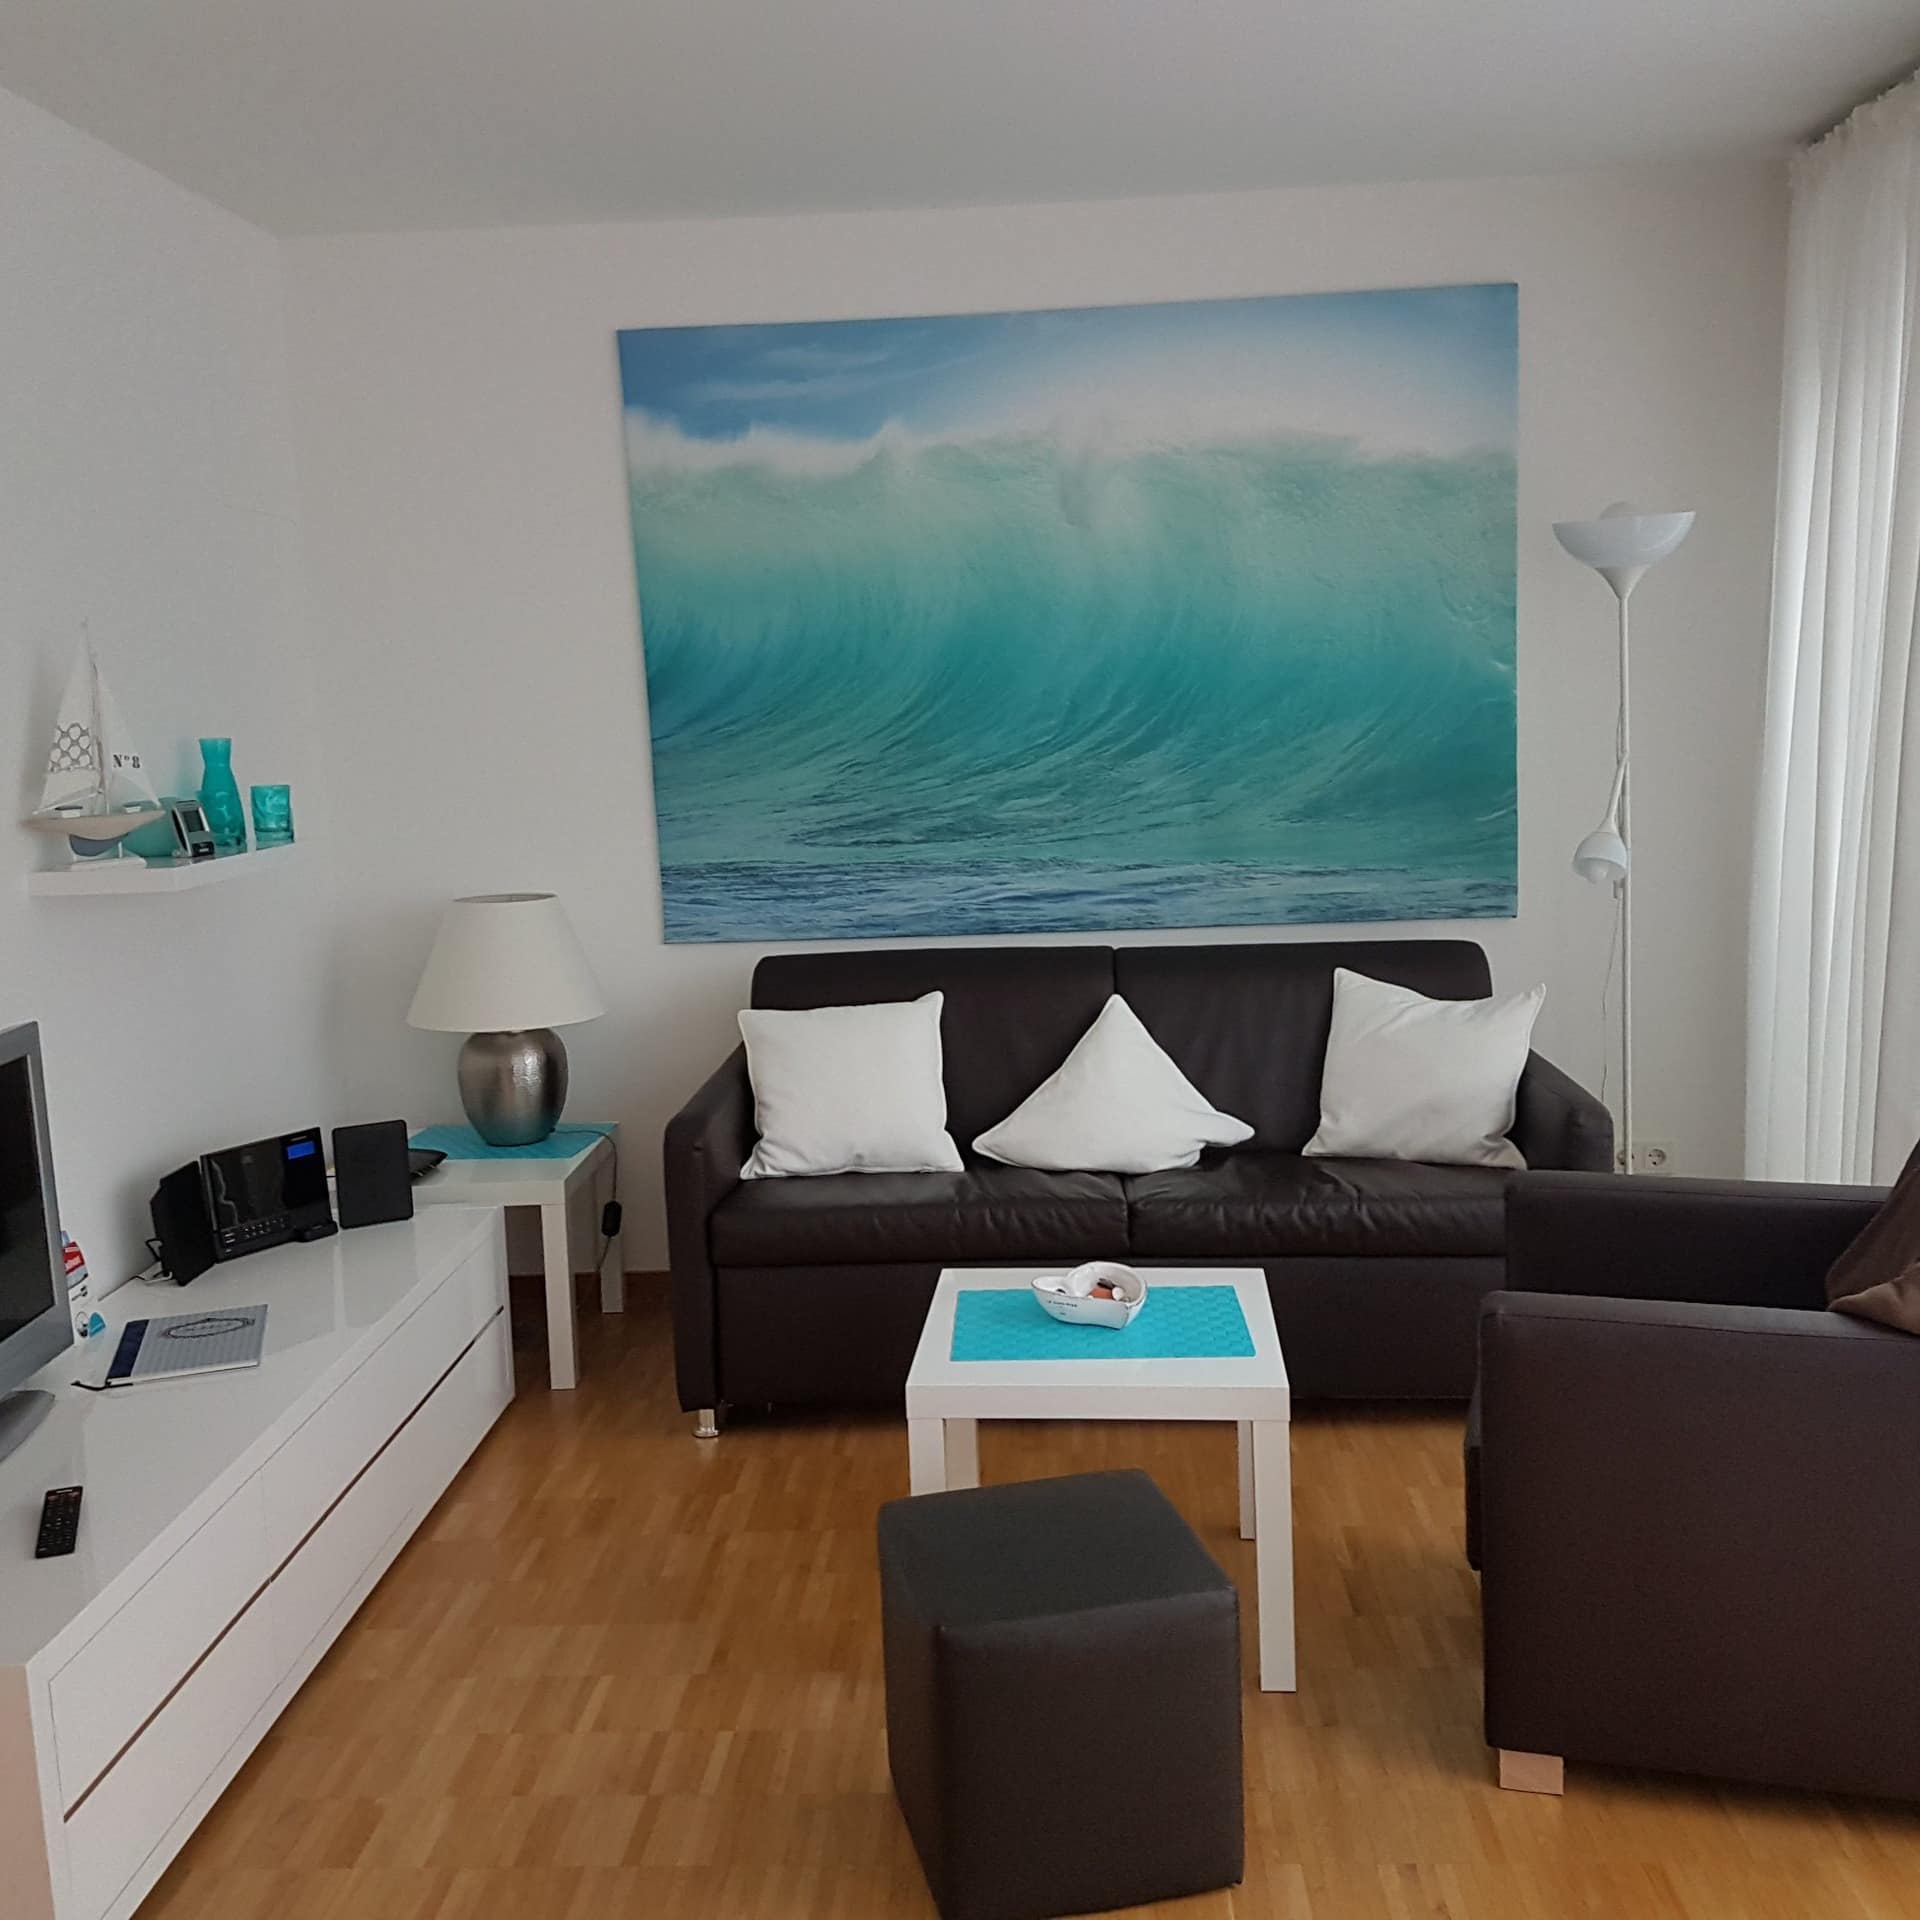 Wohnzimmer einer hell und maritim eingerichteten Ferienwohnung in Travemünde.